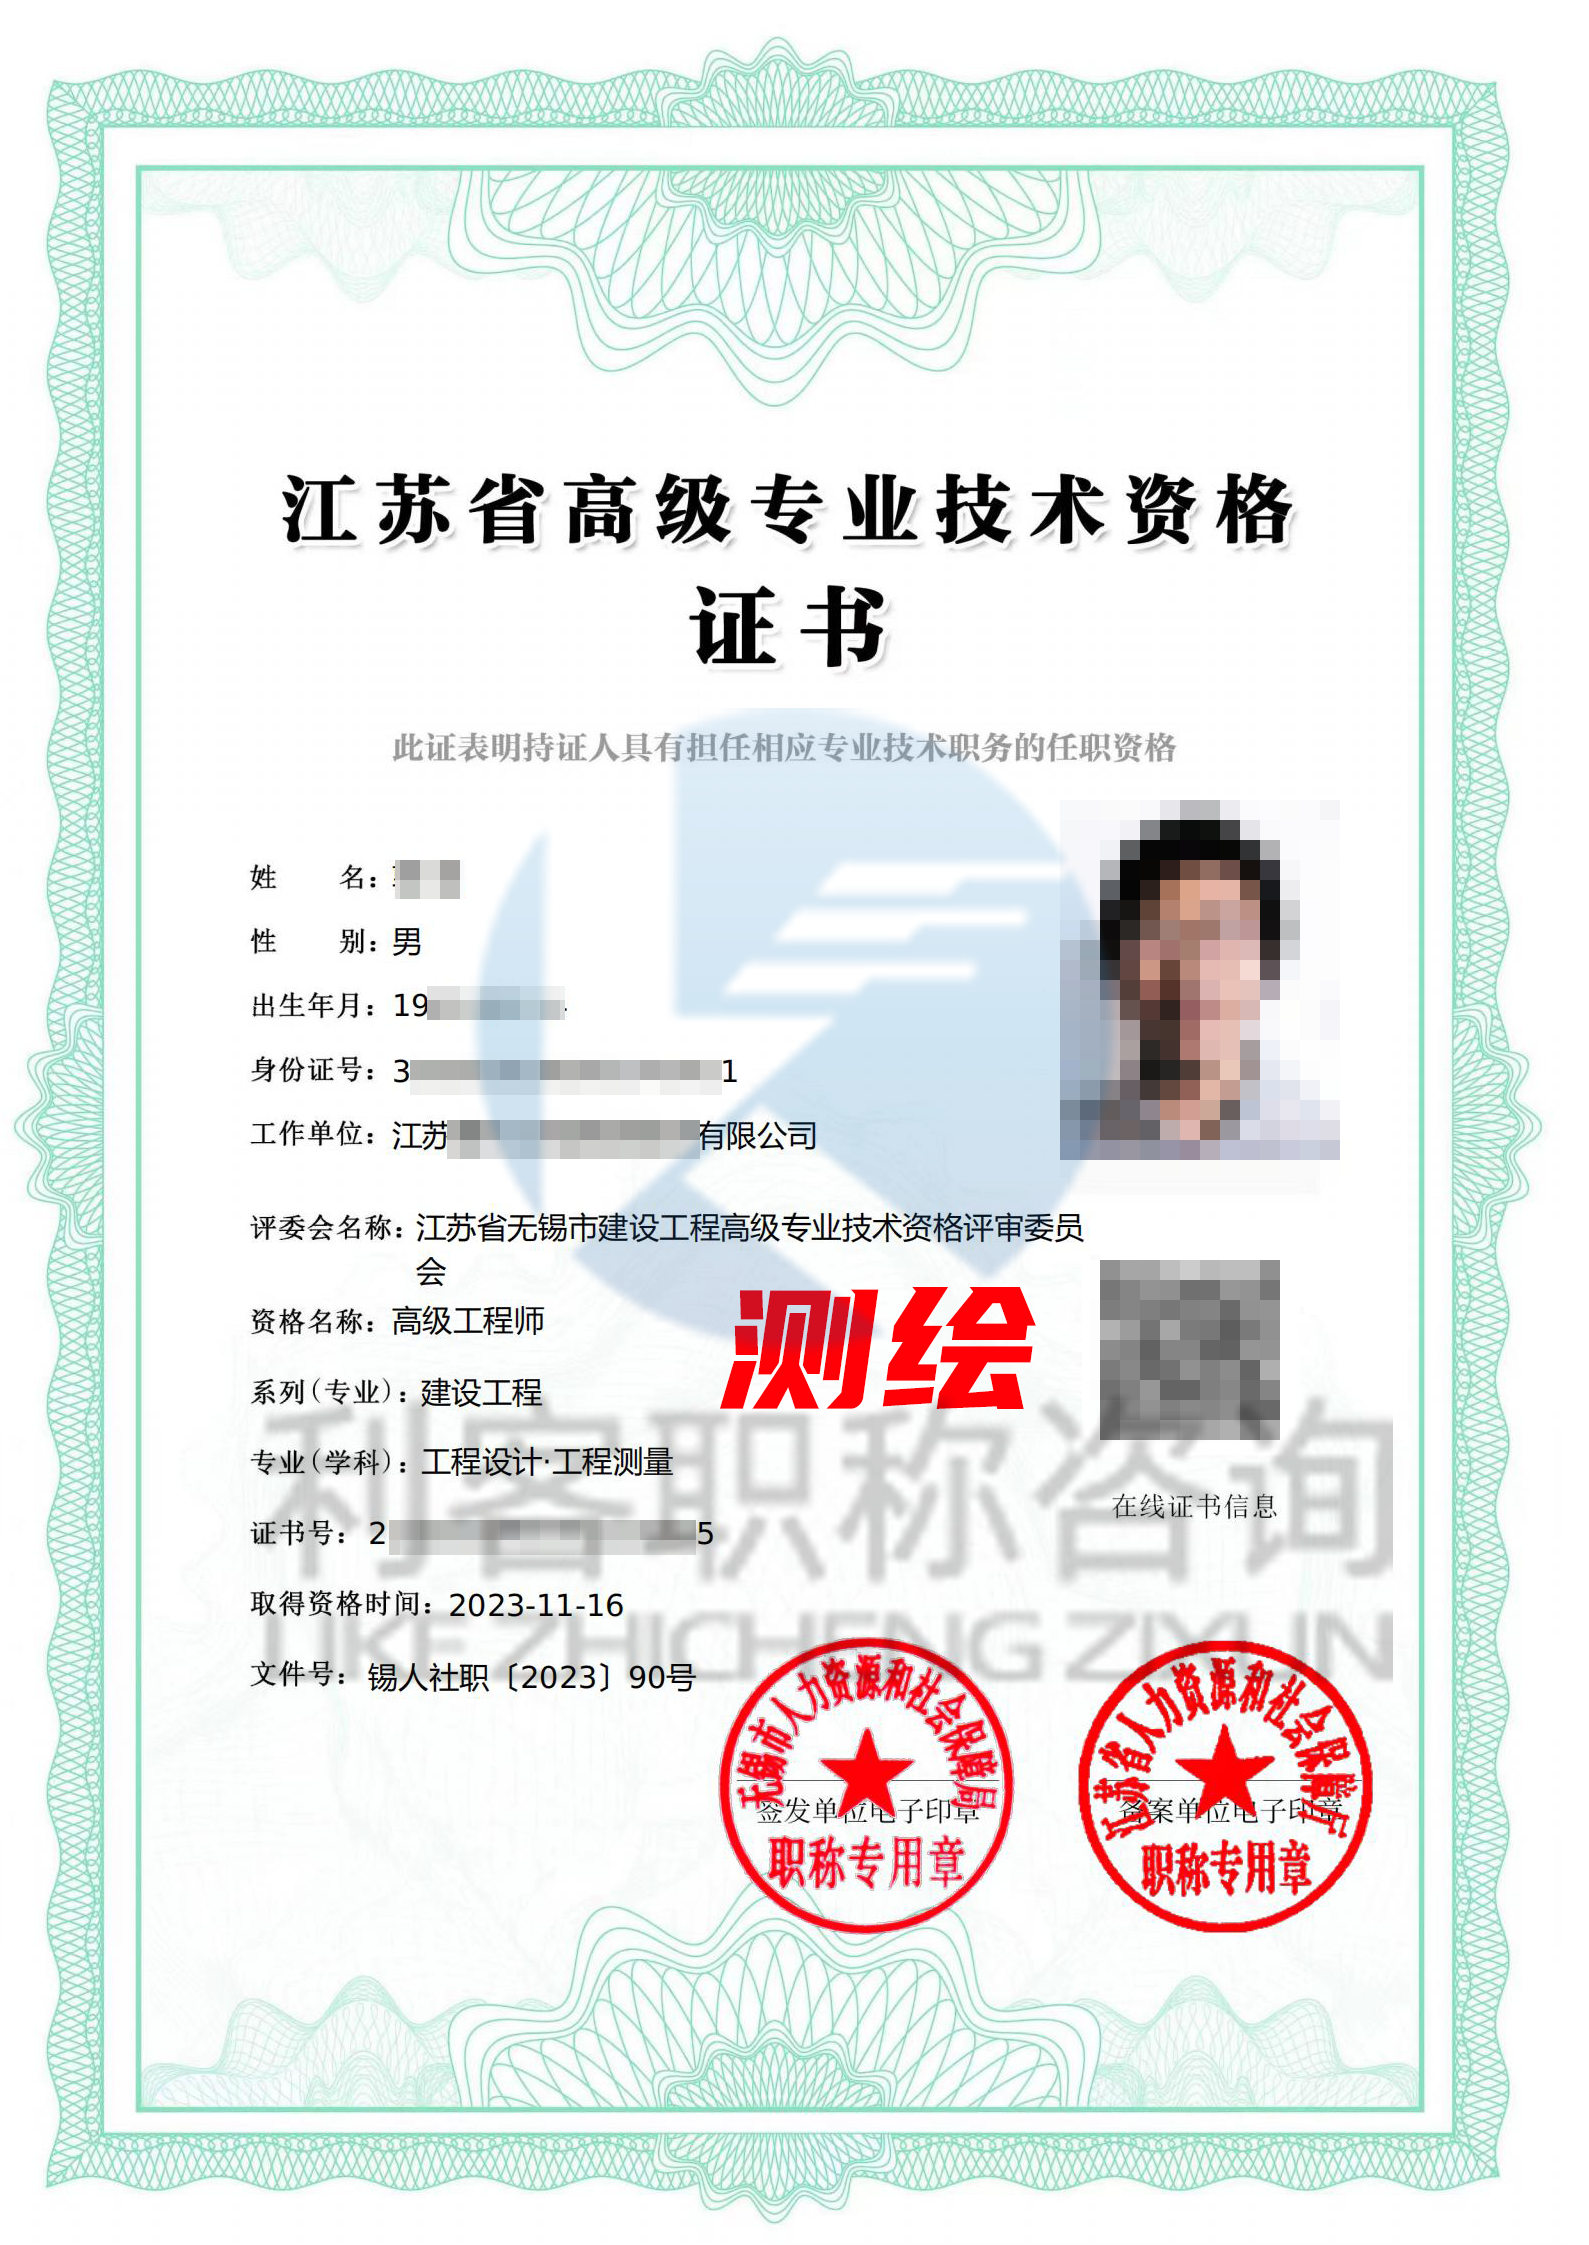 江苏副高级建设工程职称高级测绘工程师证书展示.png